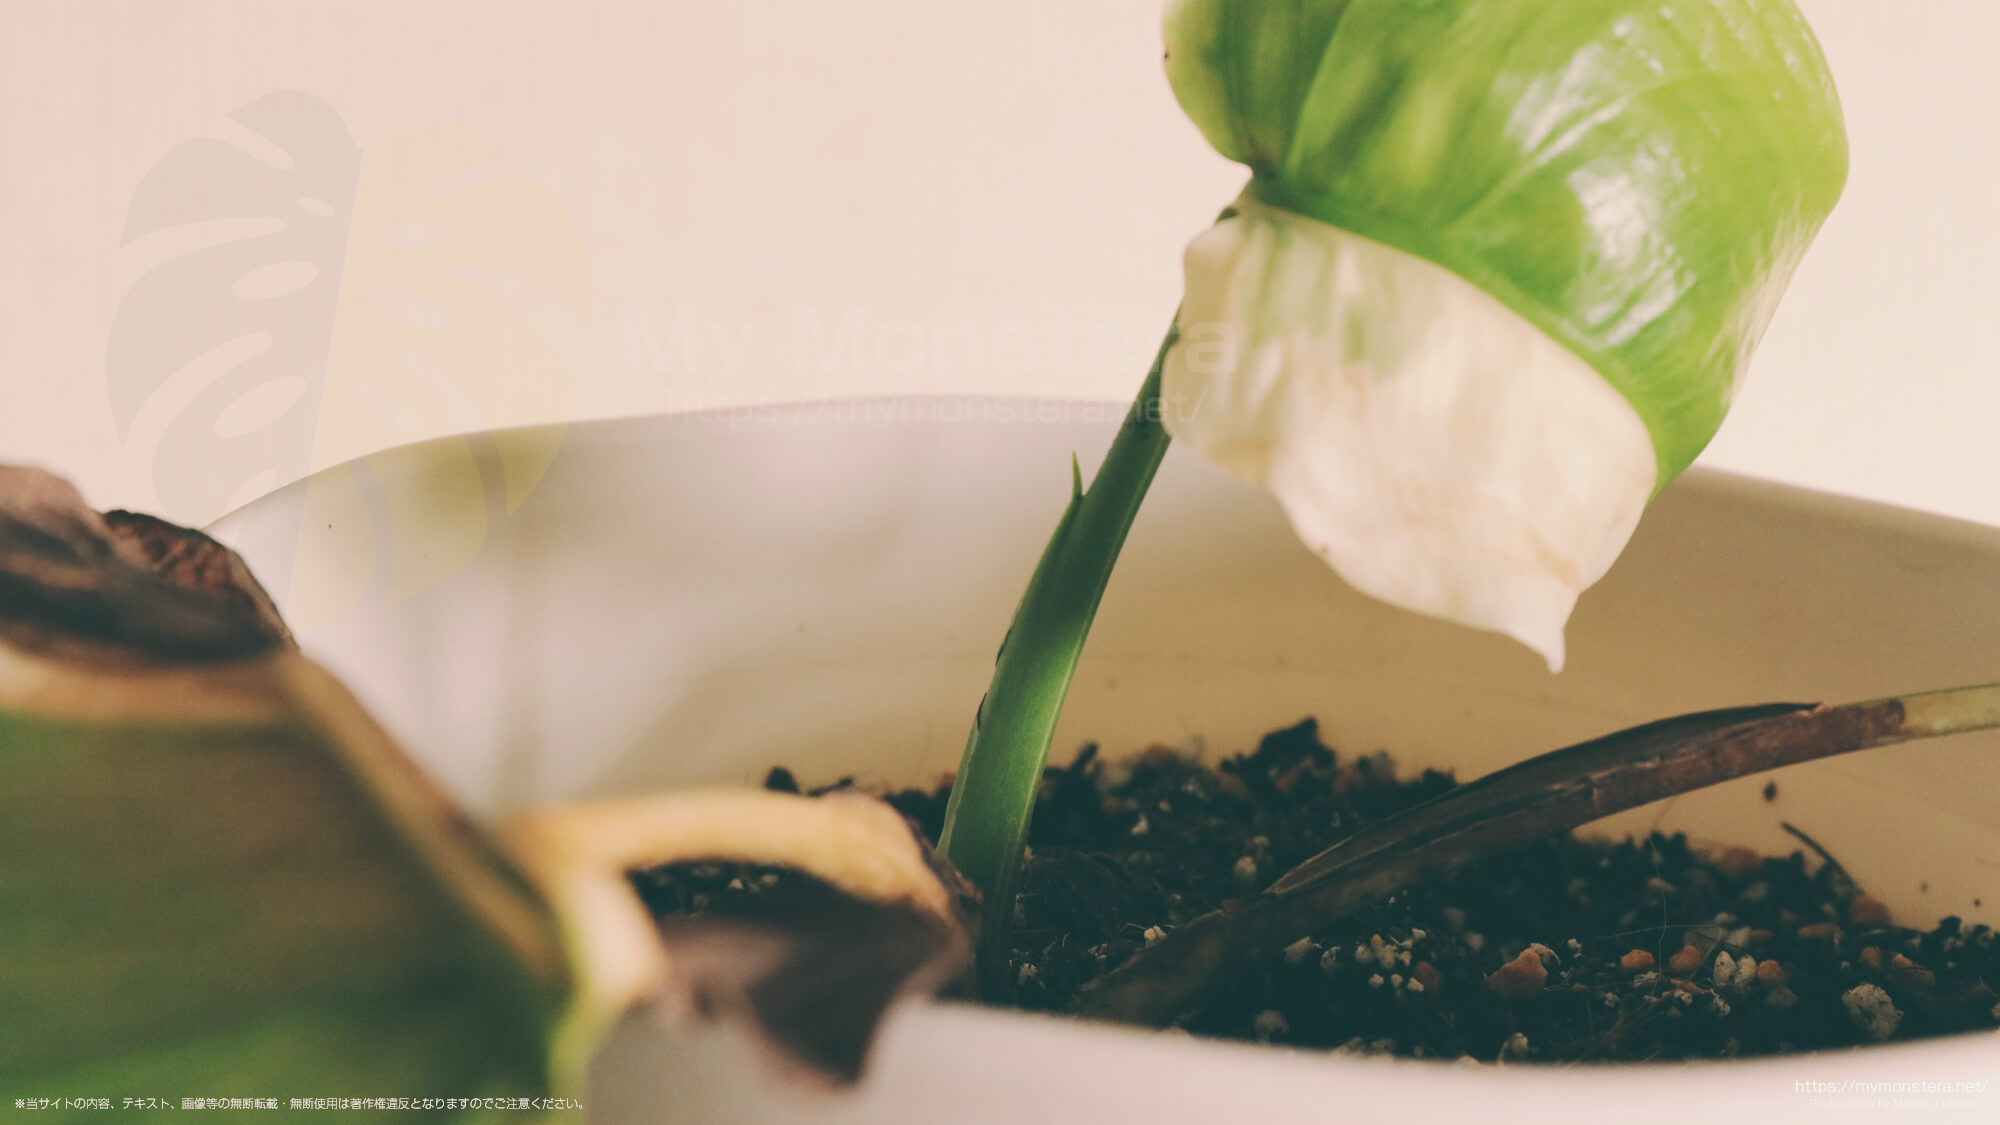 栽培8ヶ月目で初めて開いたモンステラの新葉はハーフムーン